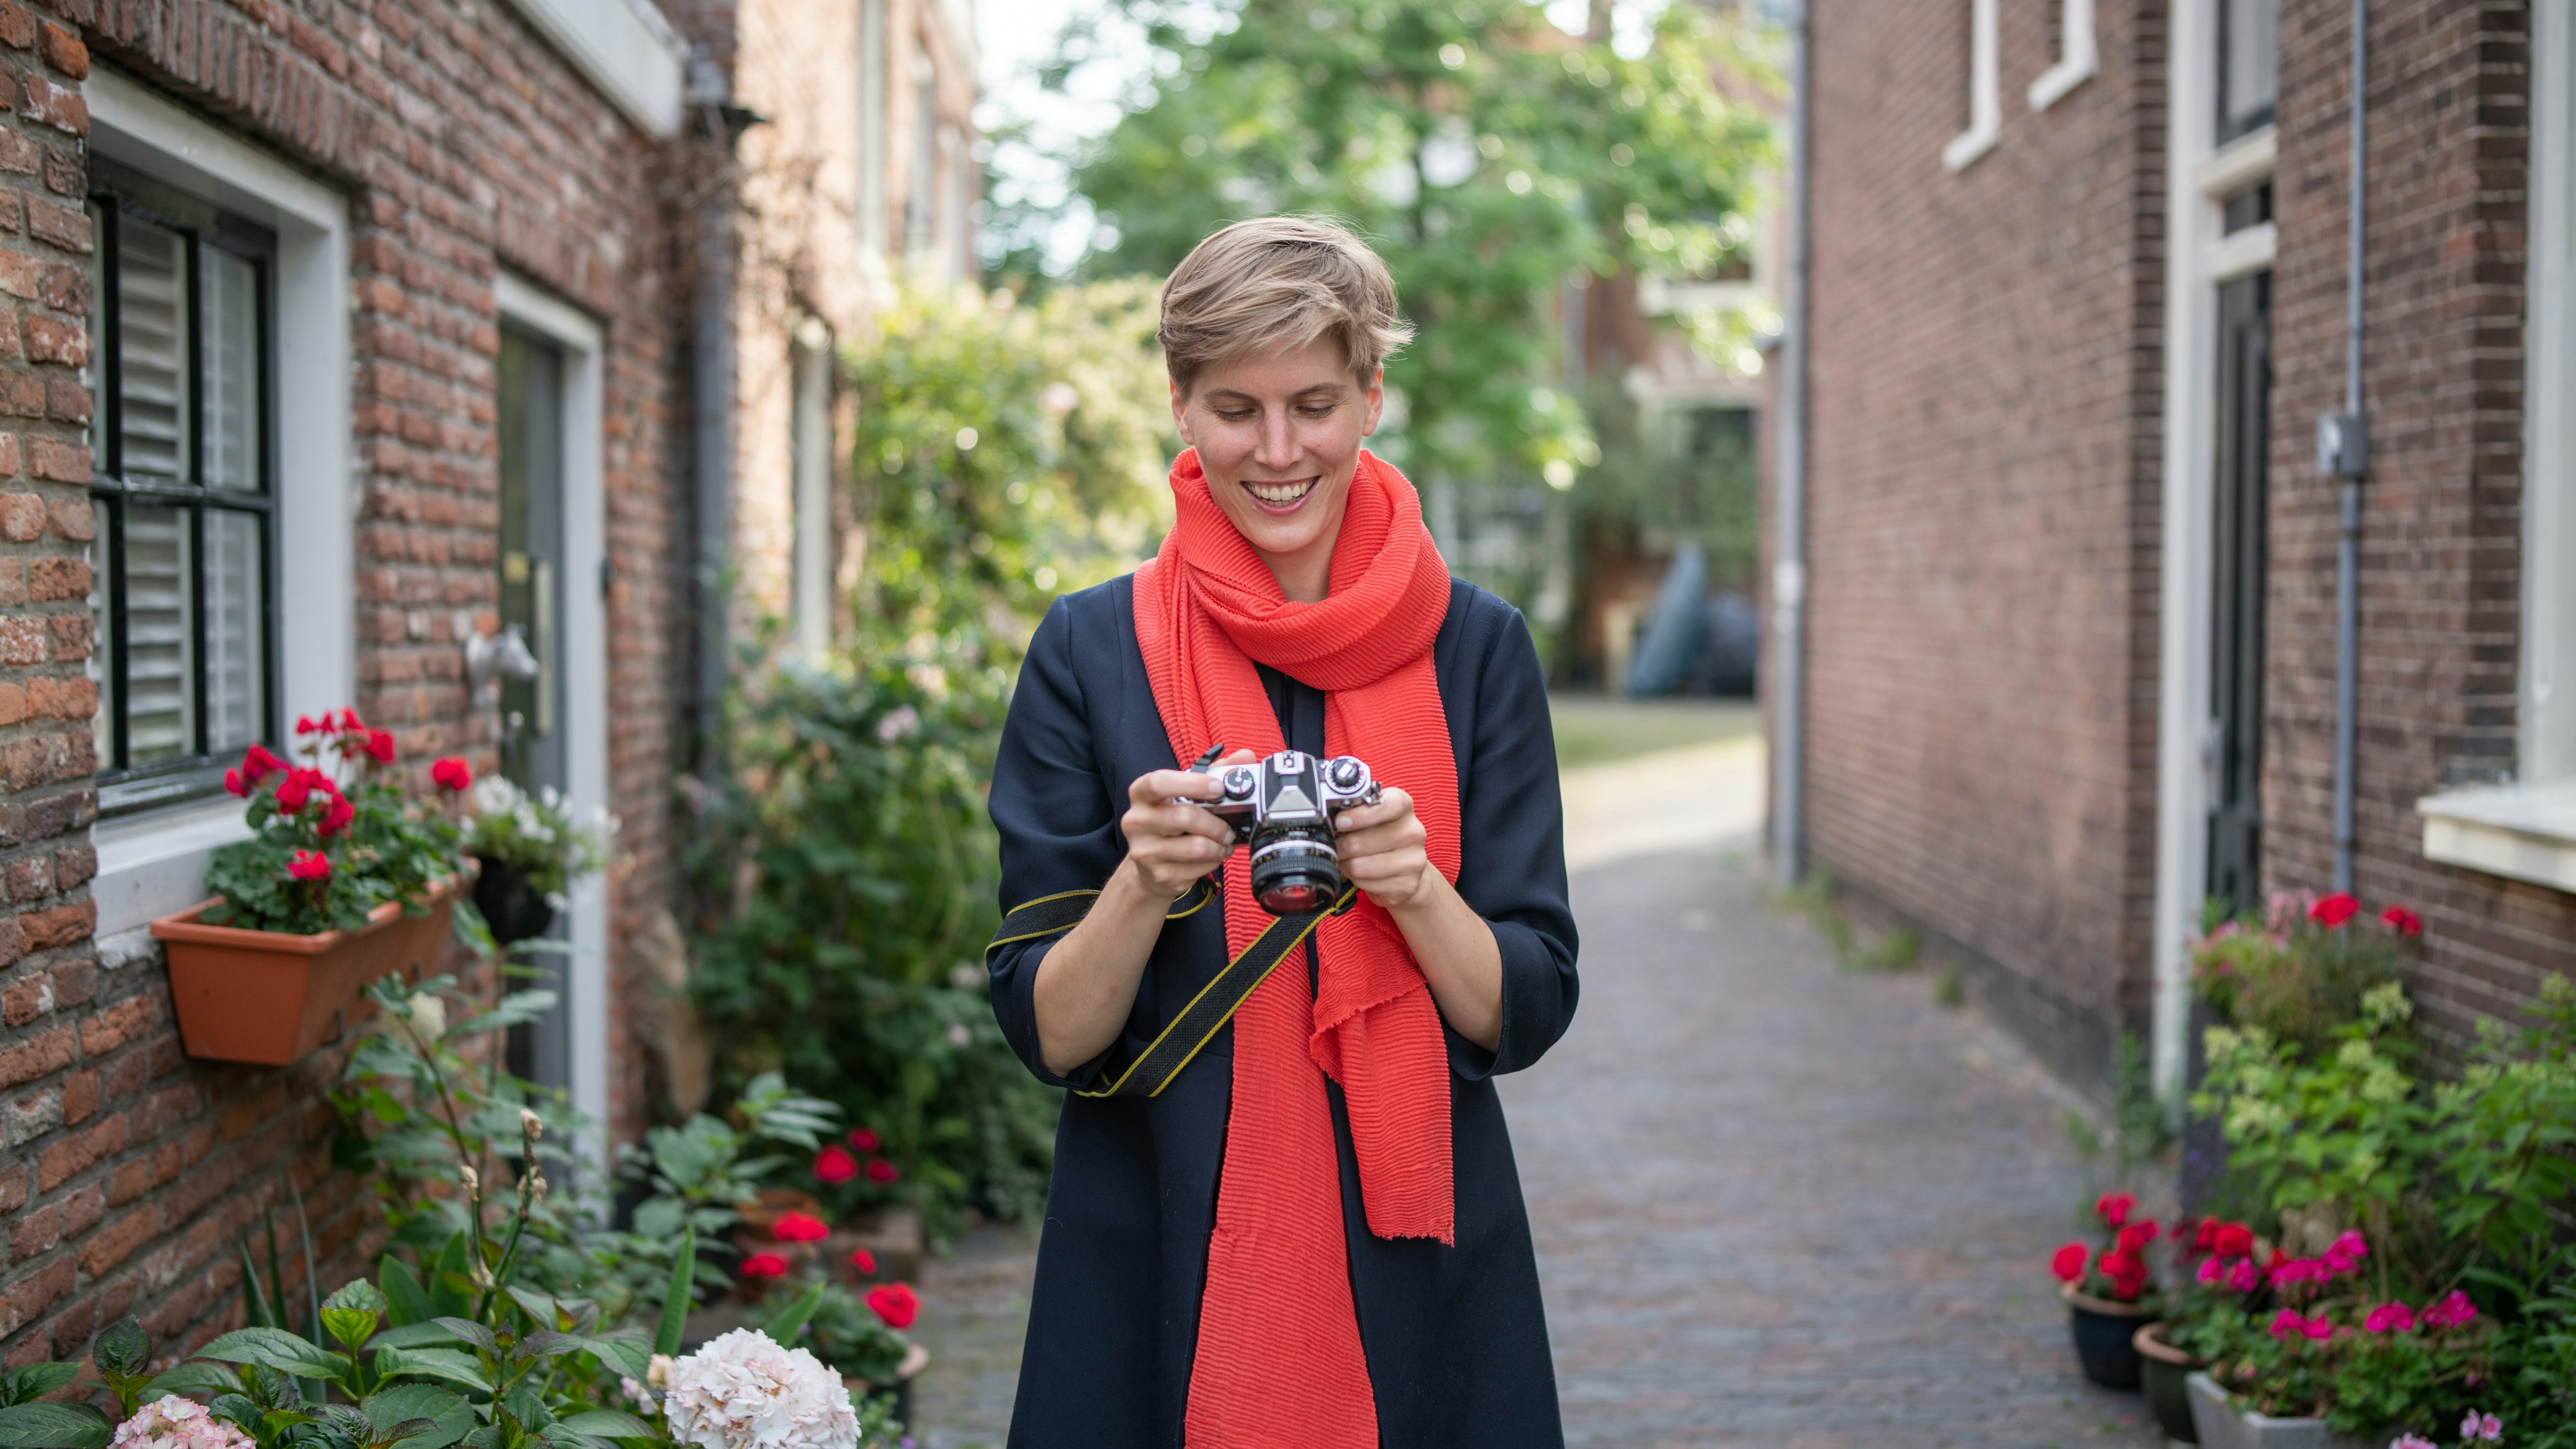 Annegret Bönemann, met een felrode sjaal, kijkt neer op een analoge camera, opgesteld in de straten van een oude stad.